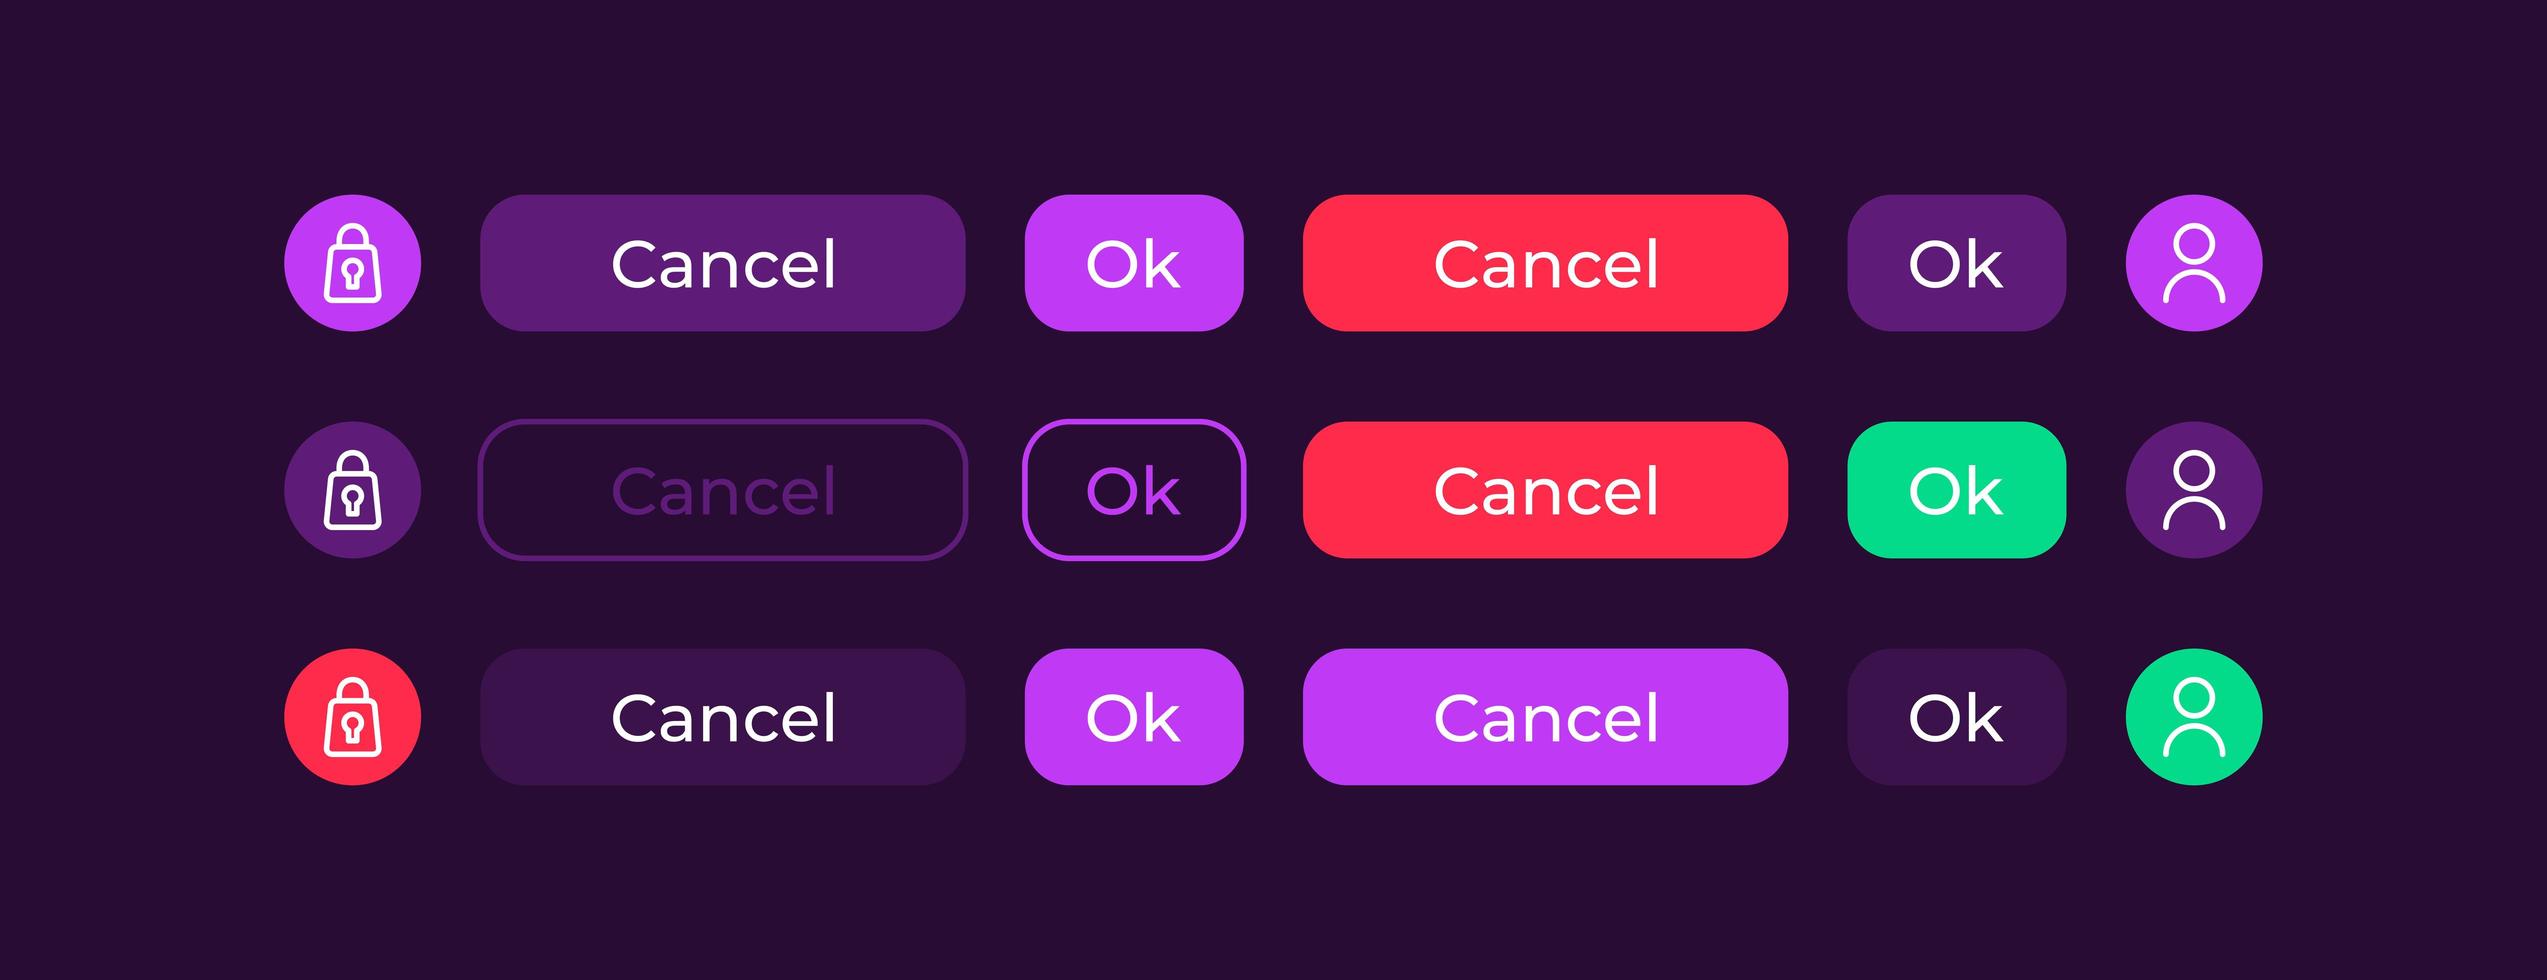 kit de elementos de interface do usuário de botões coloridos vetor